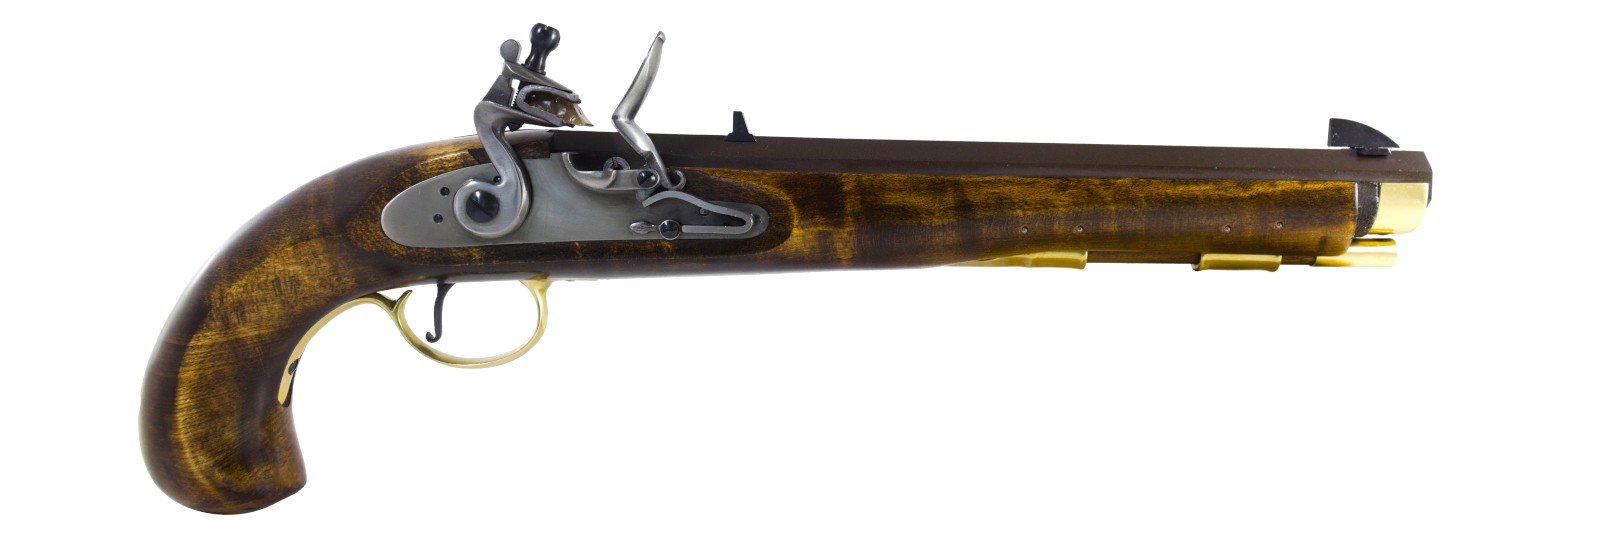 Kentucky "Maple" Pistol flintlock model